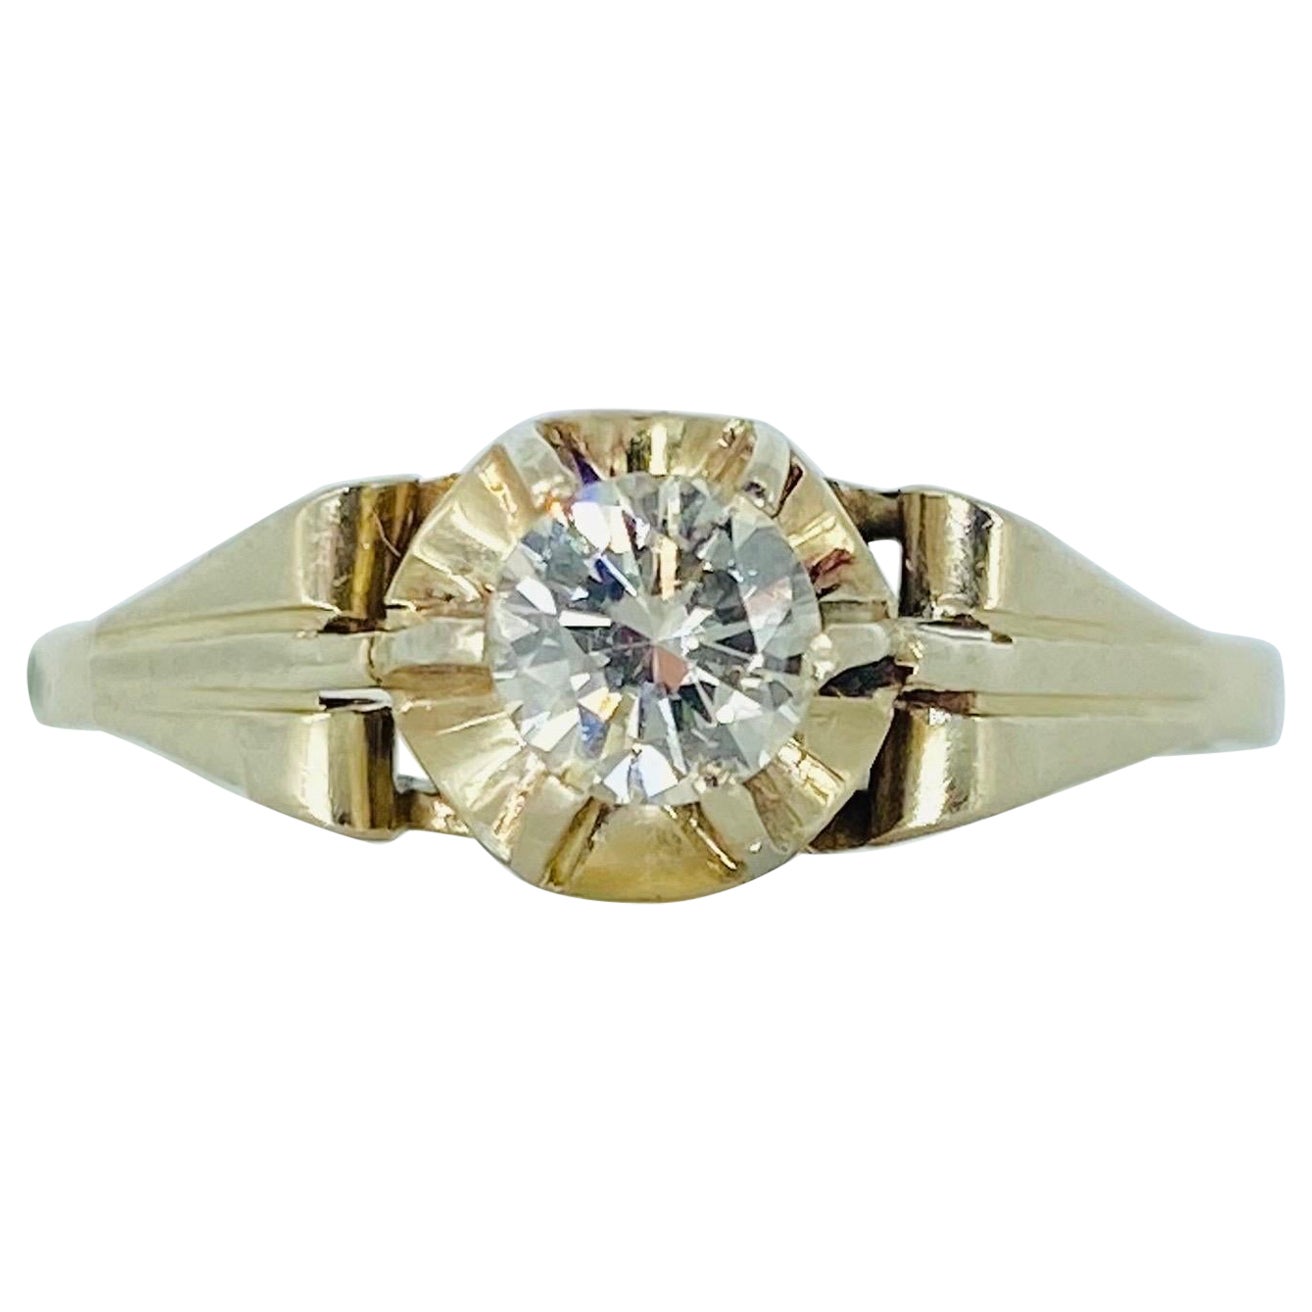 Vintage GIA Certified 0.40 Carat Round Diamond Engagement Ring 14k White Gold